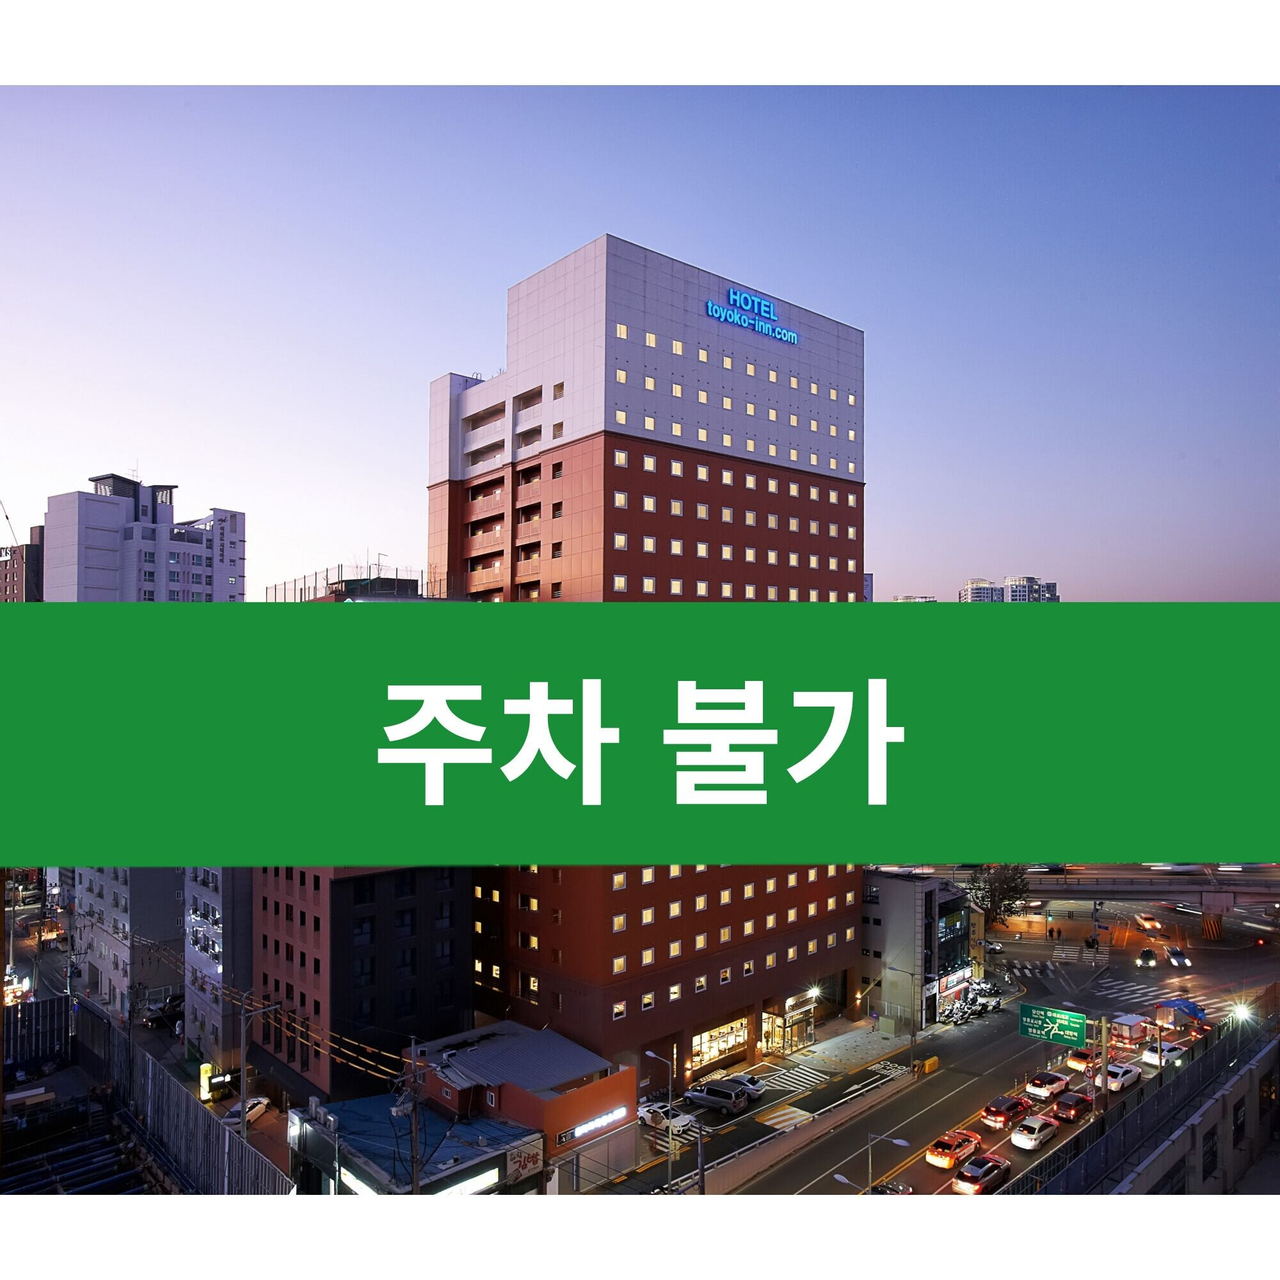 Toyoko Inn Seoul Yeongdeungpo, Yeongdeungpo